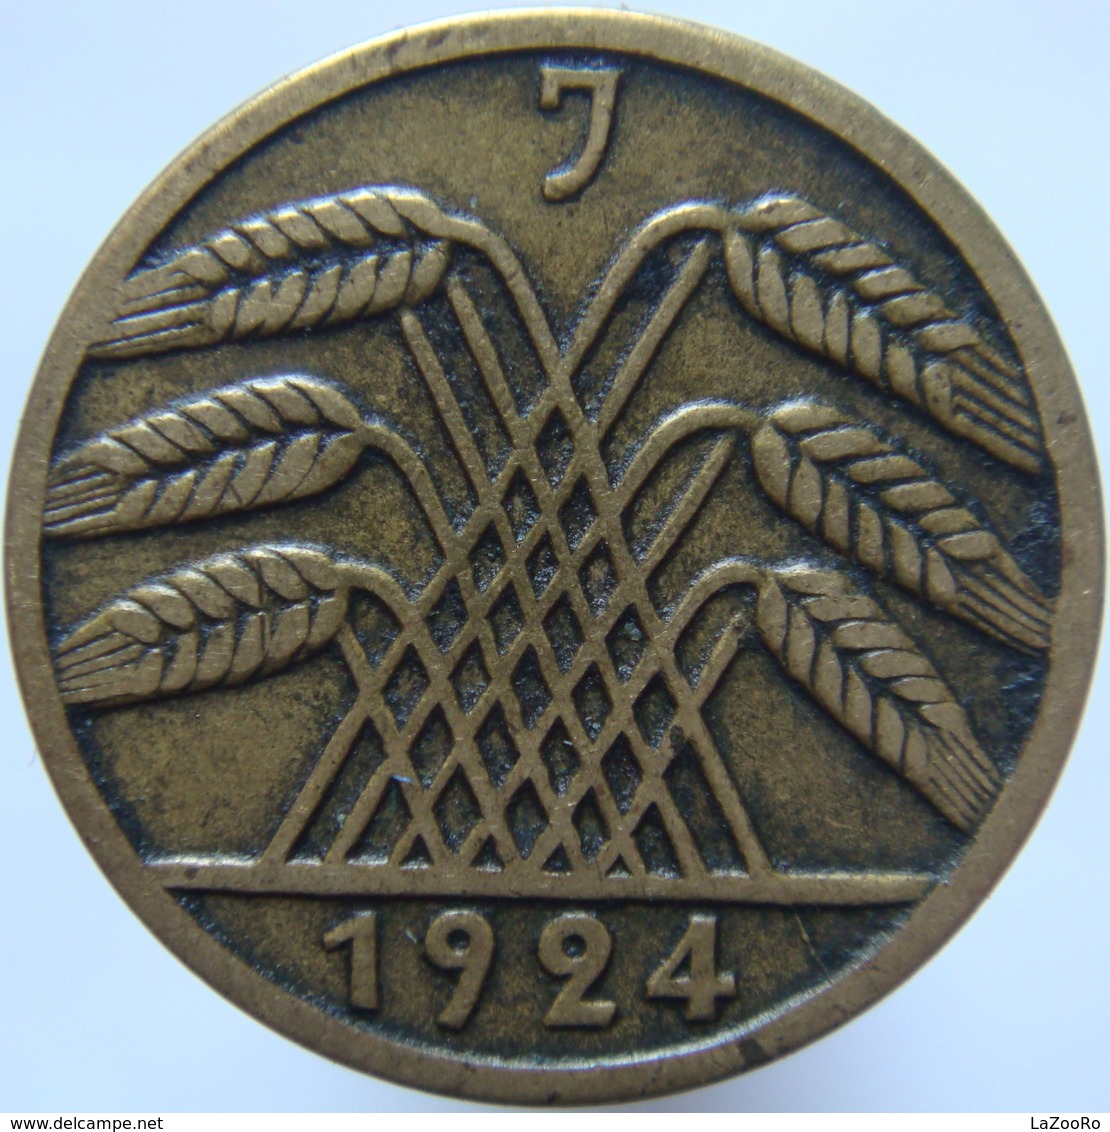 ALLEMAGNE GERMANY   5 reichspfennig  1925  A etat